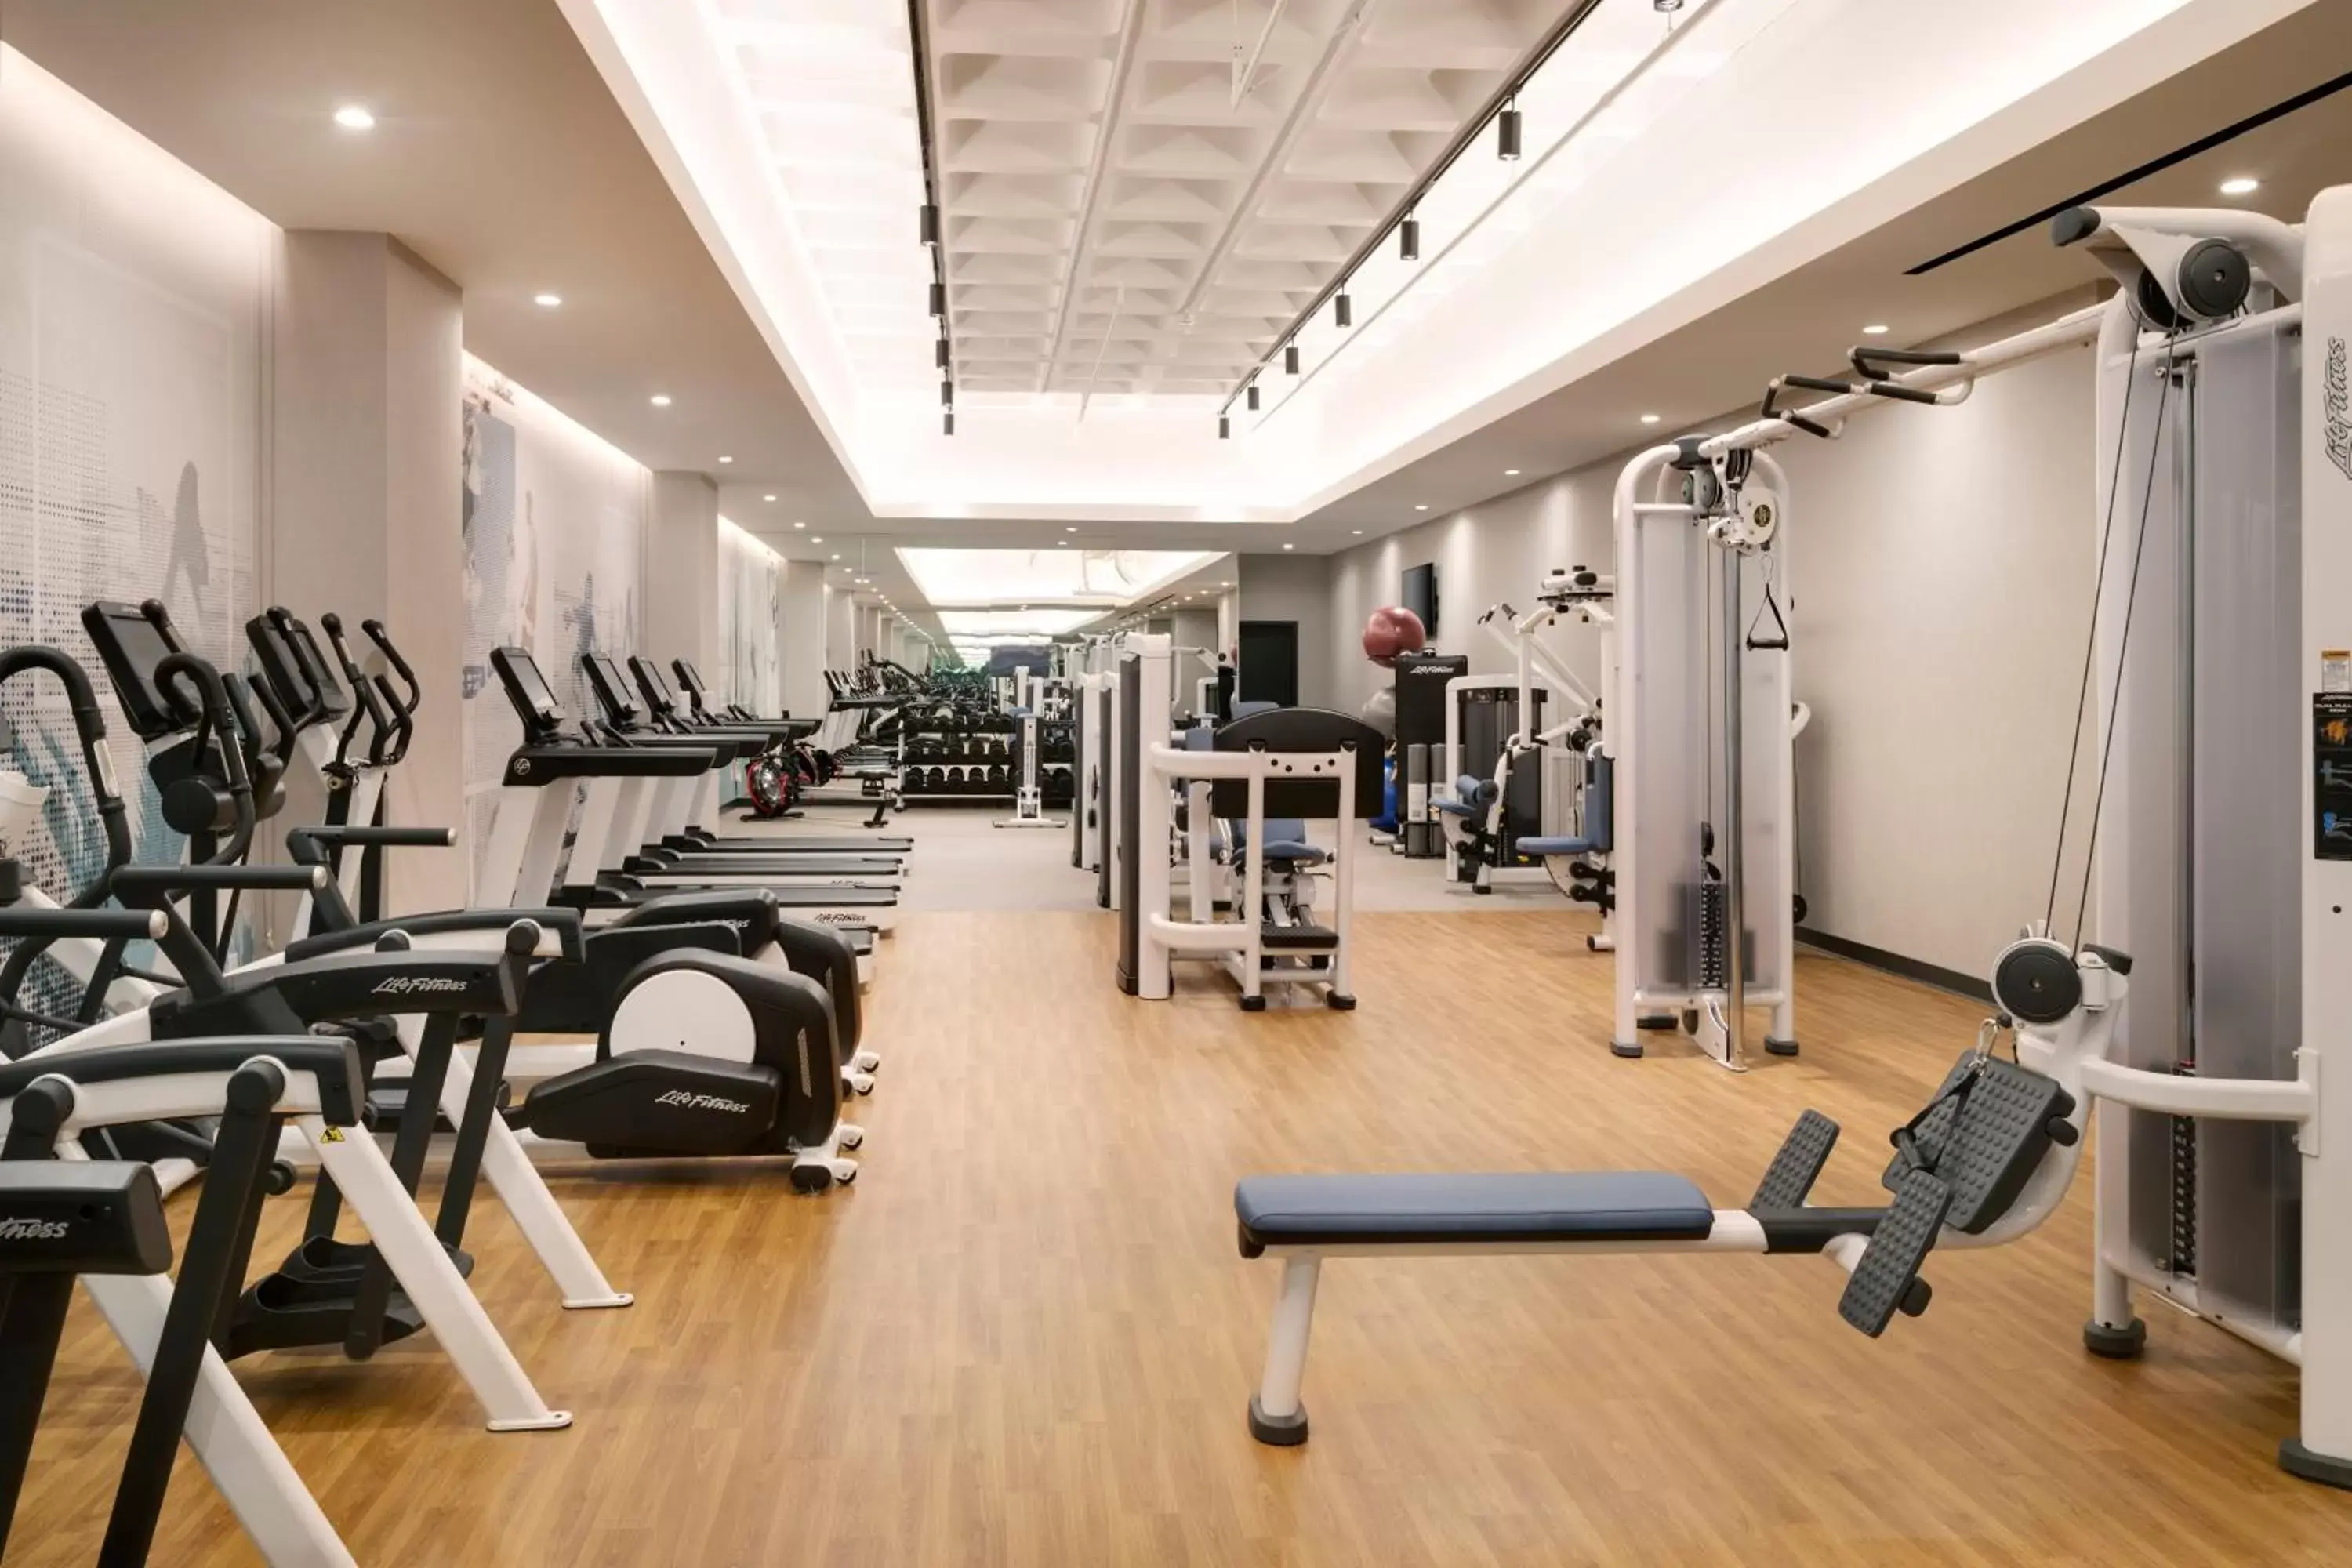 Fitness centre/facilities, Fitness Center/Facilities in Hyatt House LAX Century Blvd